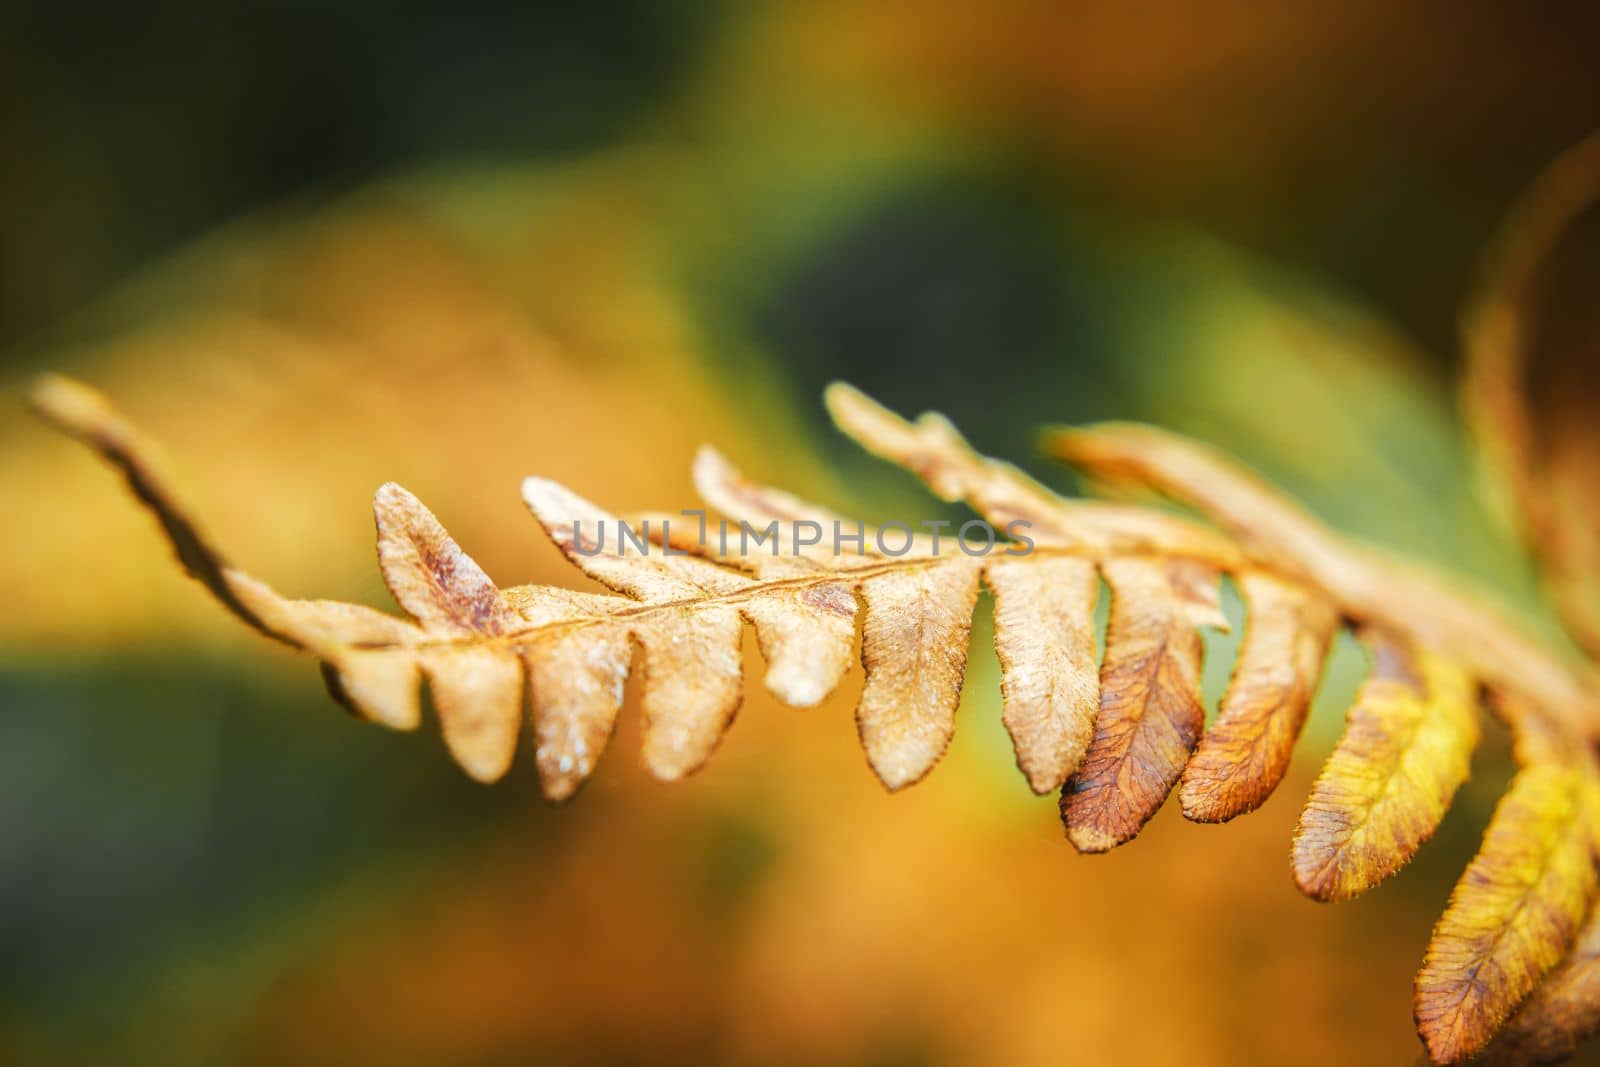 A close-up of a single dry fern sprig by darekb22